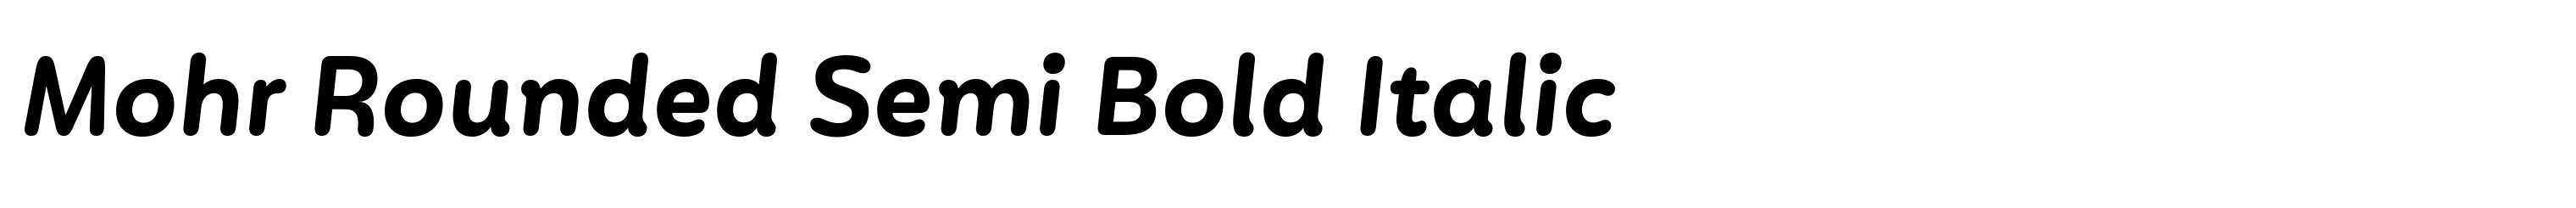 Mohr Rounded Semi Bold Italic